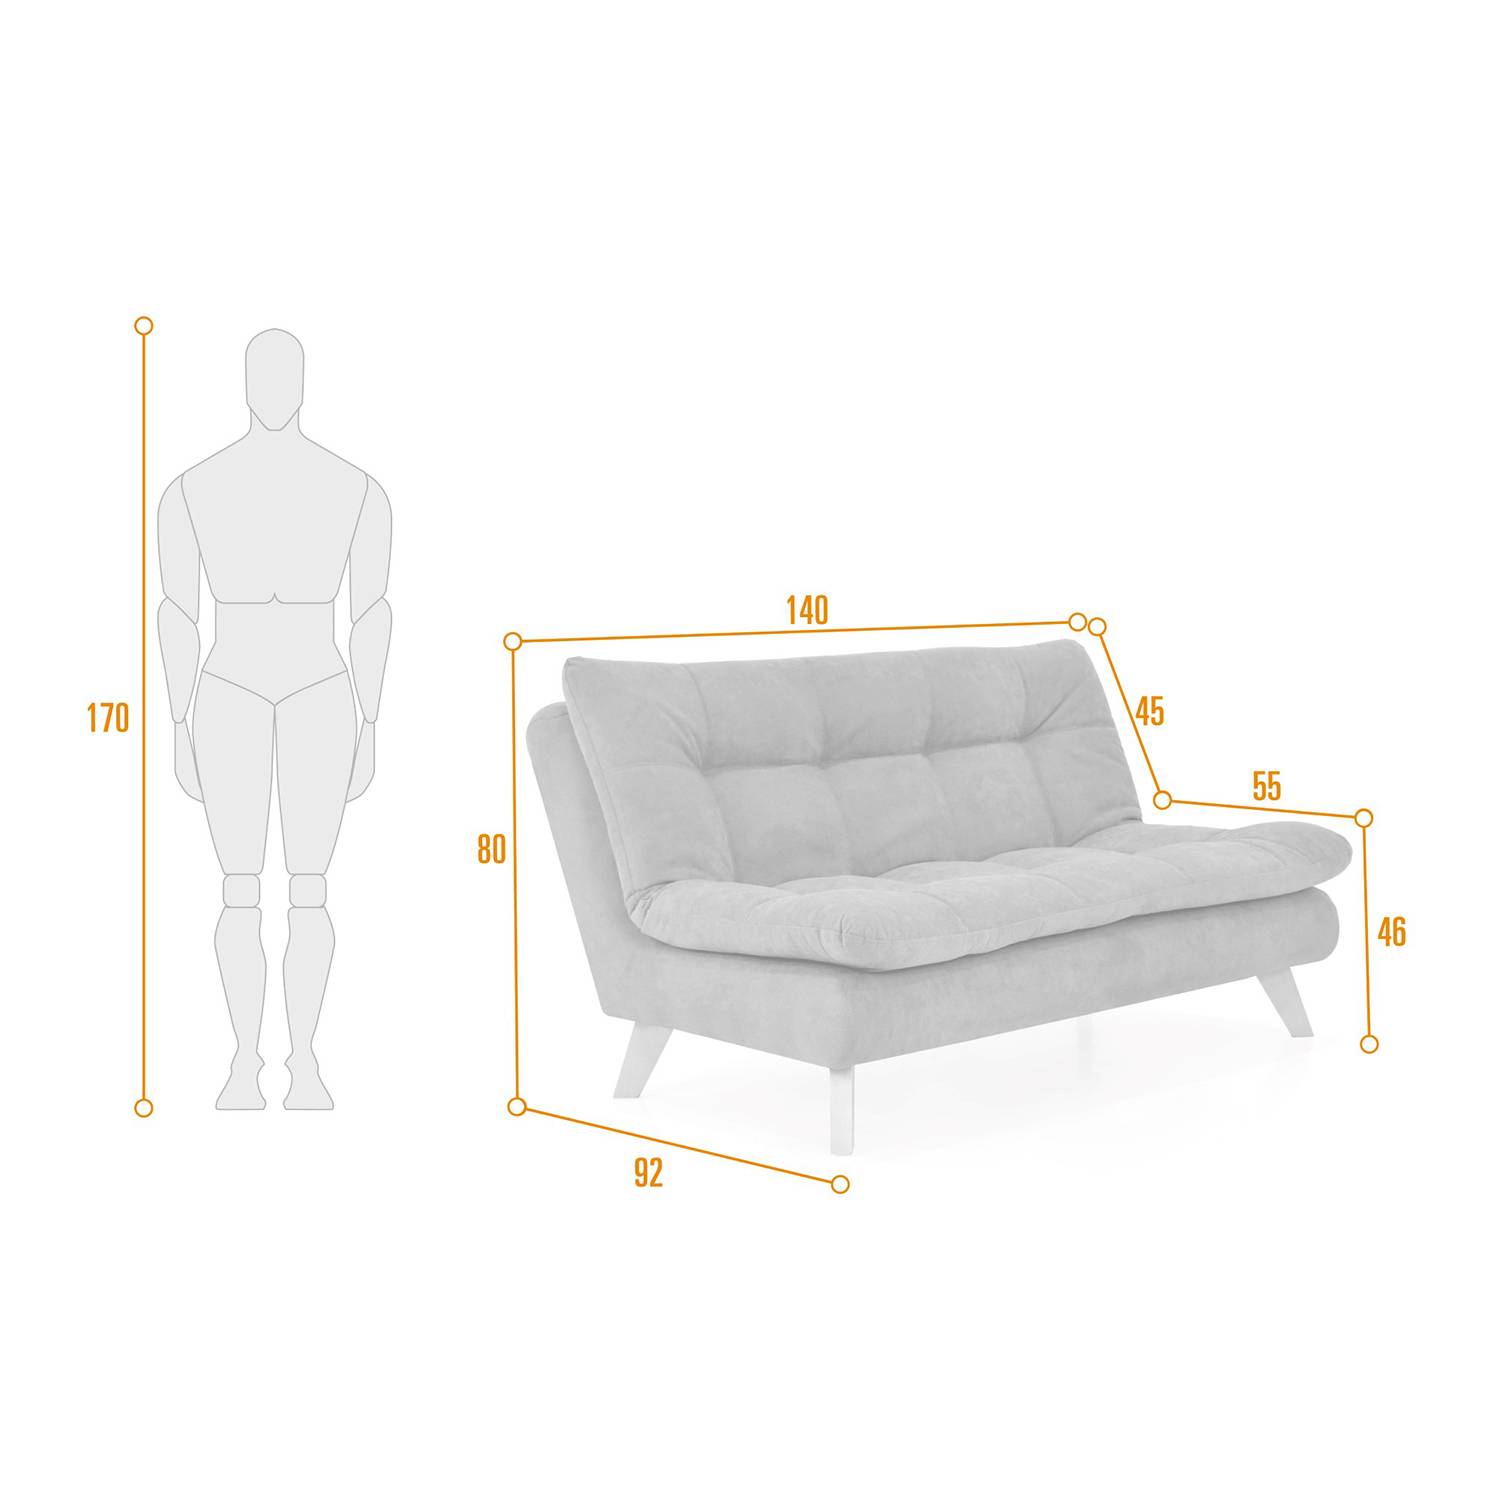 Con un relleno de espuma, nuestro sillón ofrece un soporte firme y cómodo para tu cuerpo.